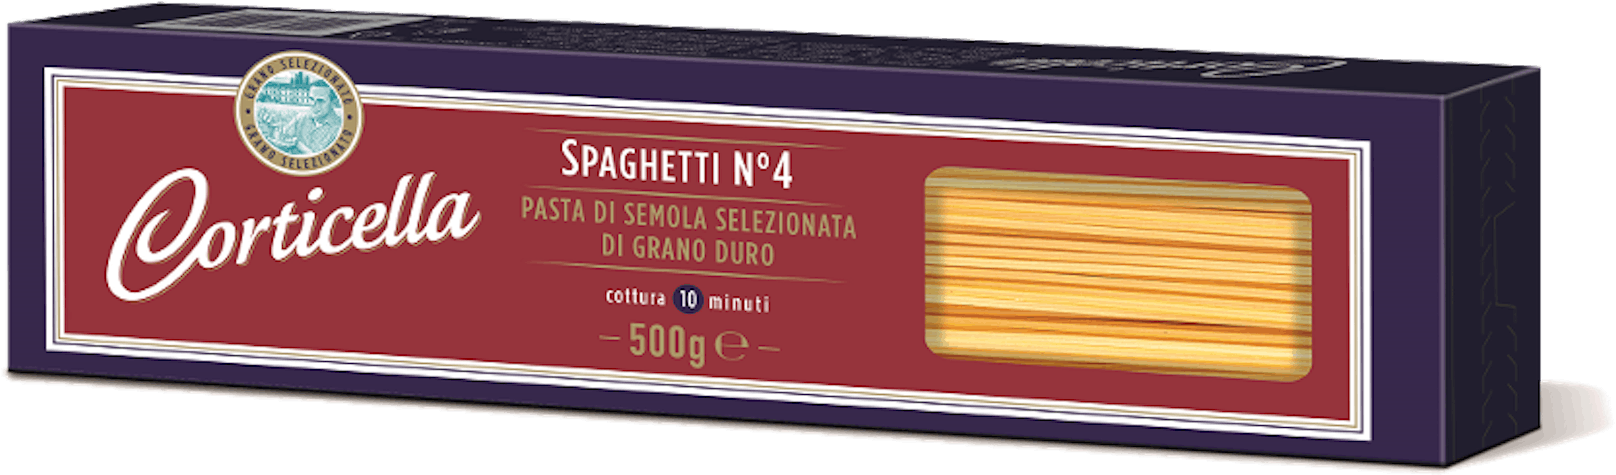 Corticella Spaghetti No. 4